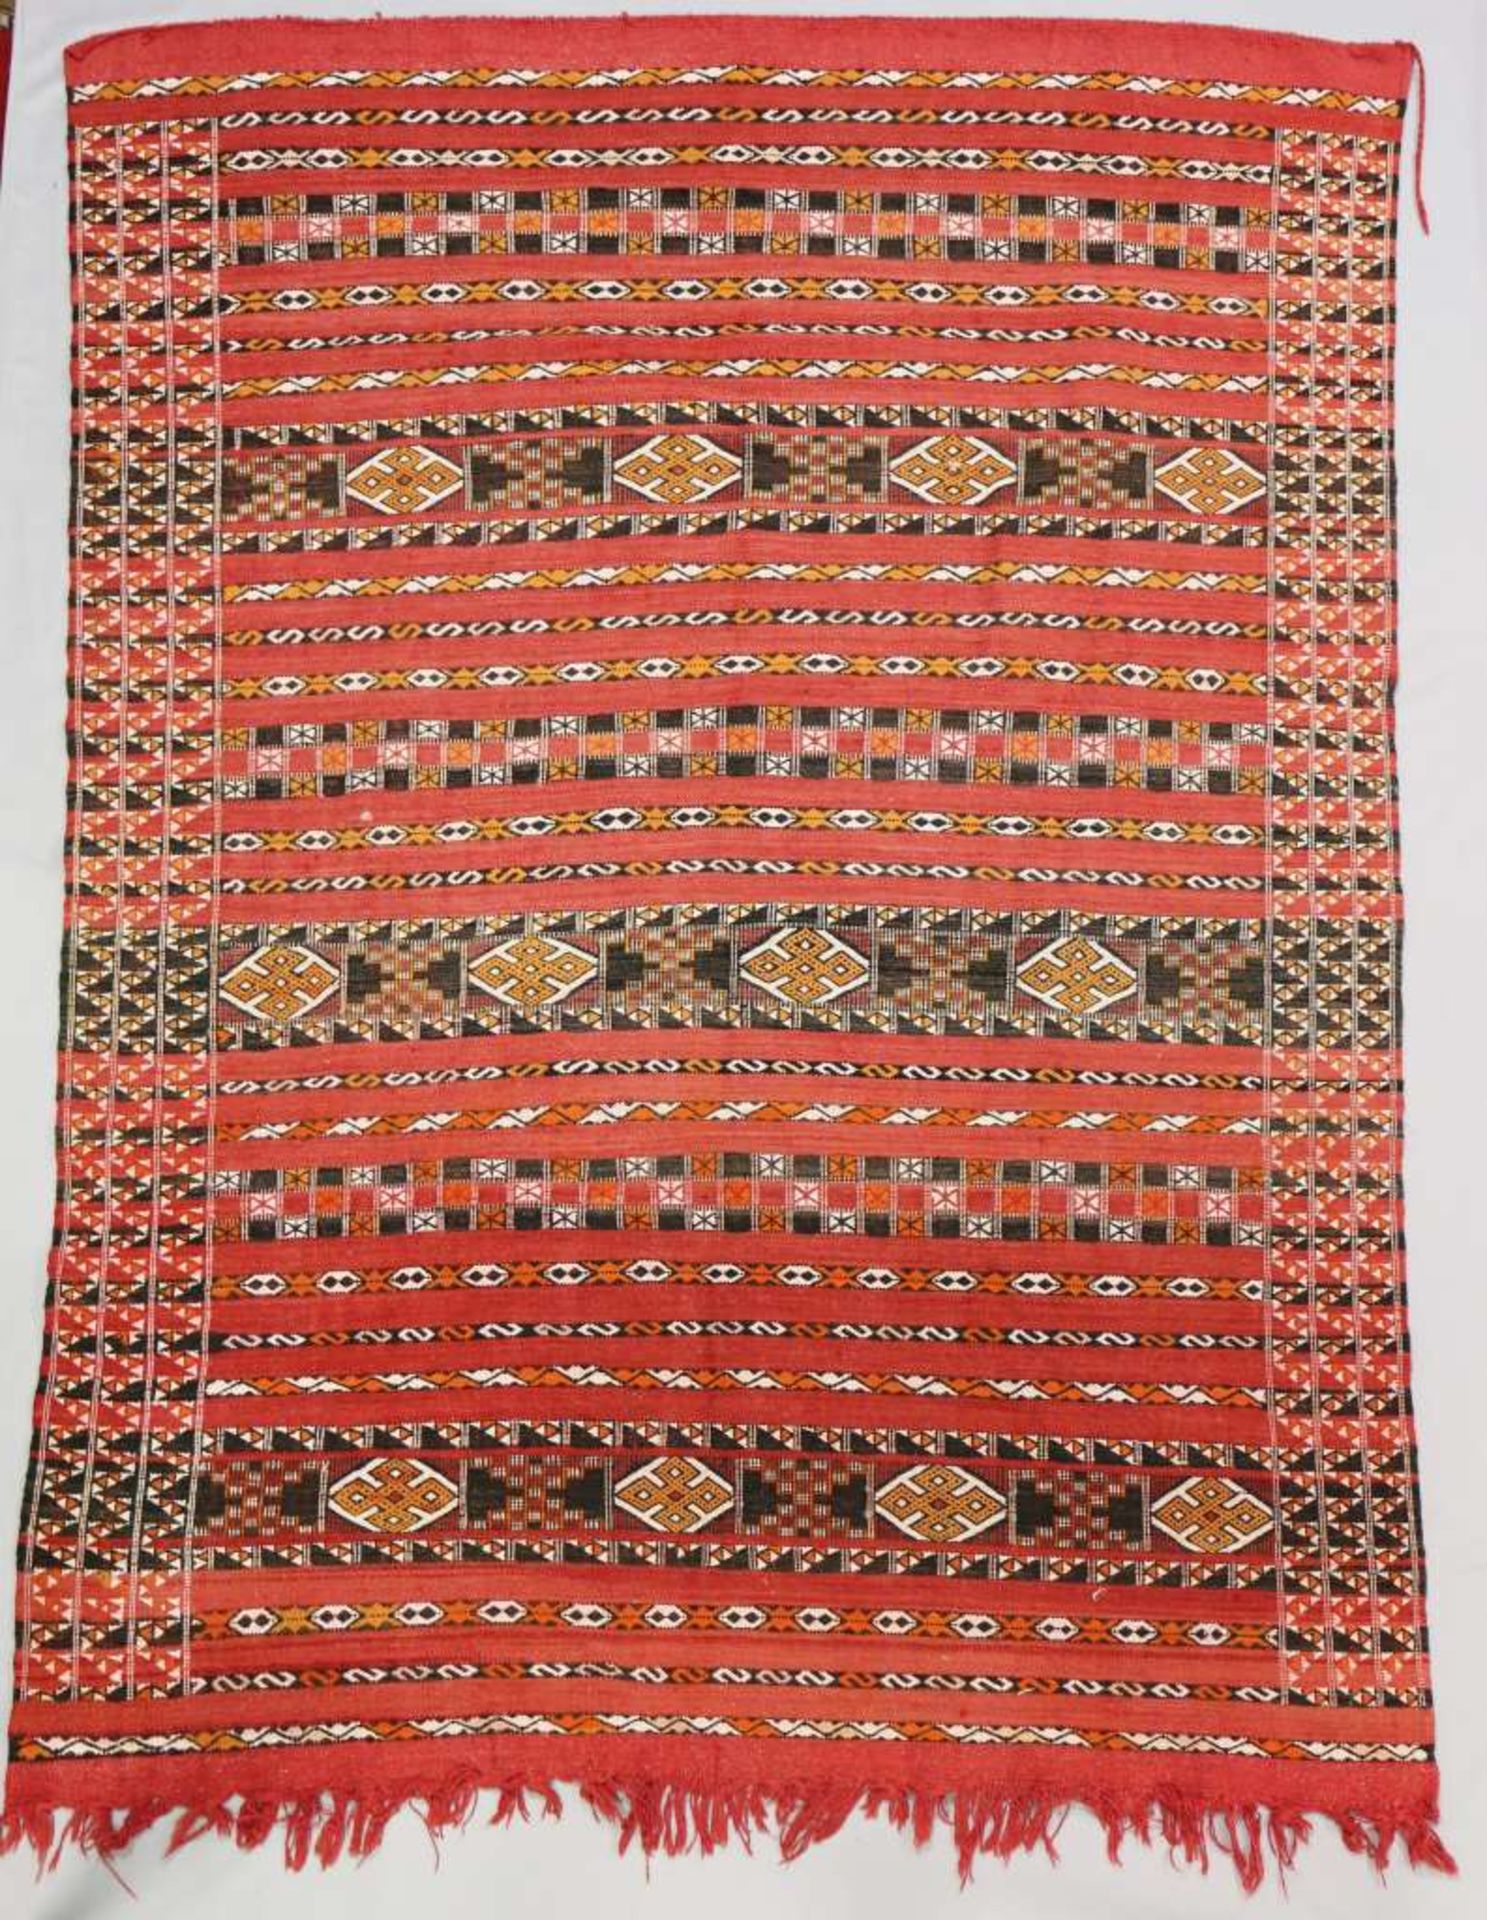 Marokkanischer Teppich, 1. H. 20. Jh., Flachgewebe, rotgrundig, alternierendes Streifendekor mit